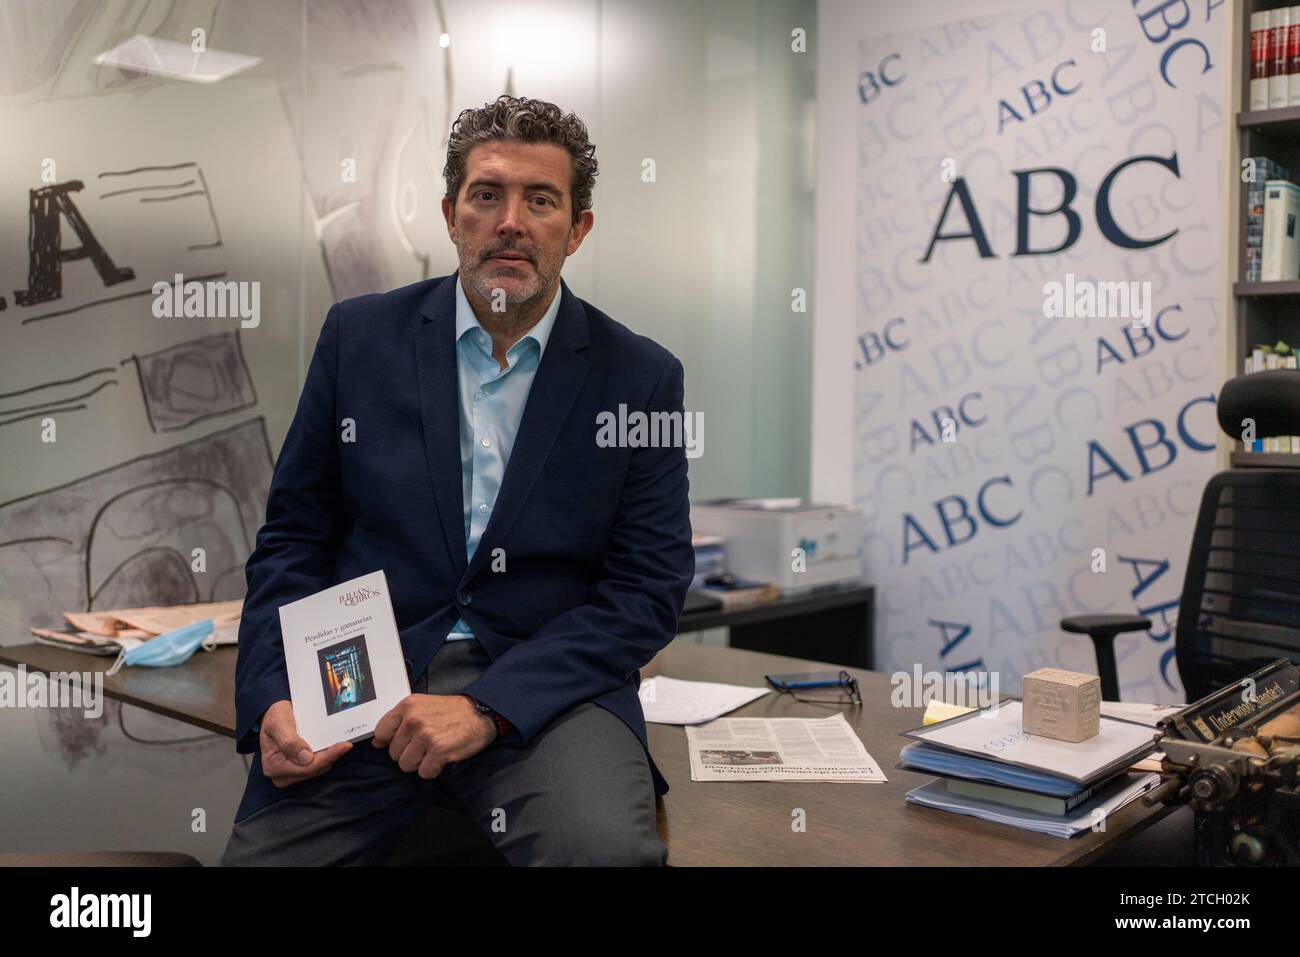 Madrid, 02/09/2020. Julián Quirós nell'ufficio editoriale ABC. Foto: Matías Nieto. ArchDC. Crediti: Album / Archivo ABC / Matías Nieto Koenig Foto Stock